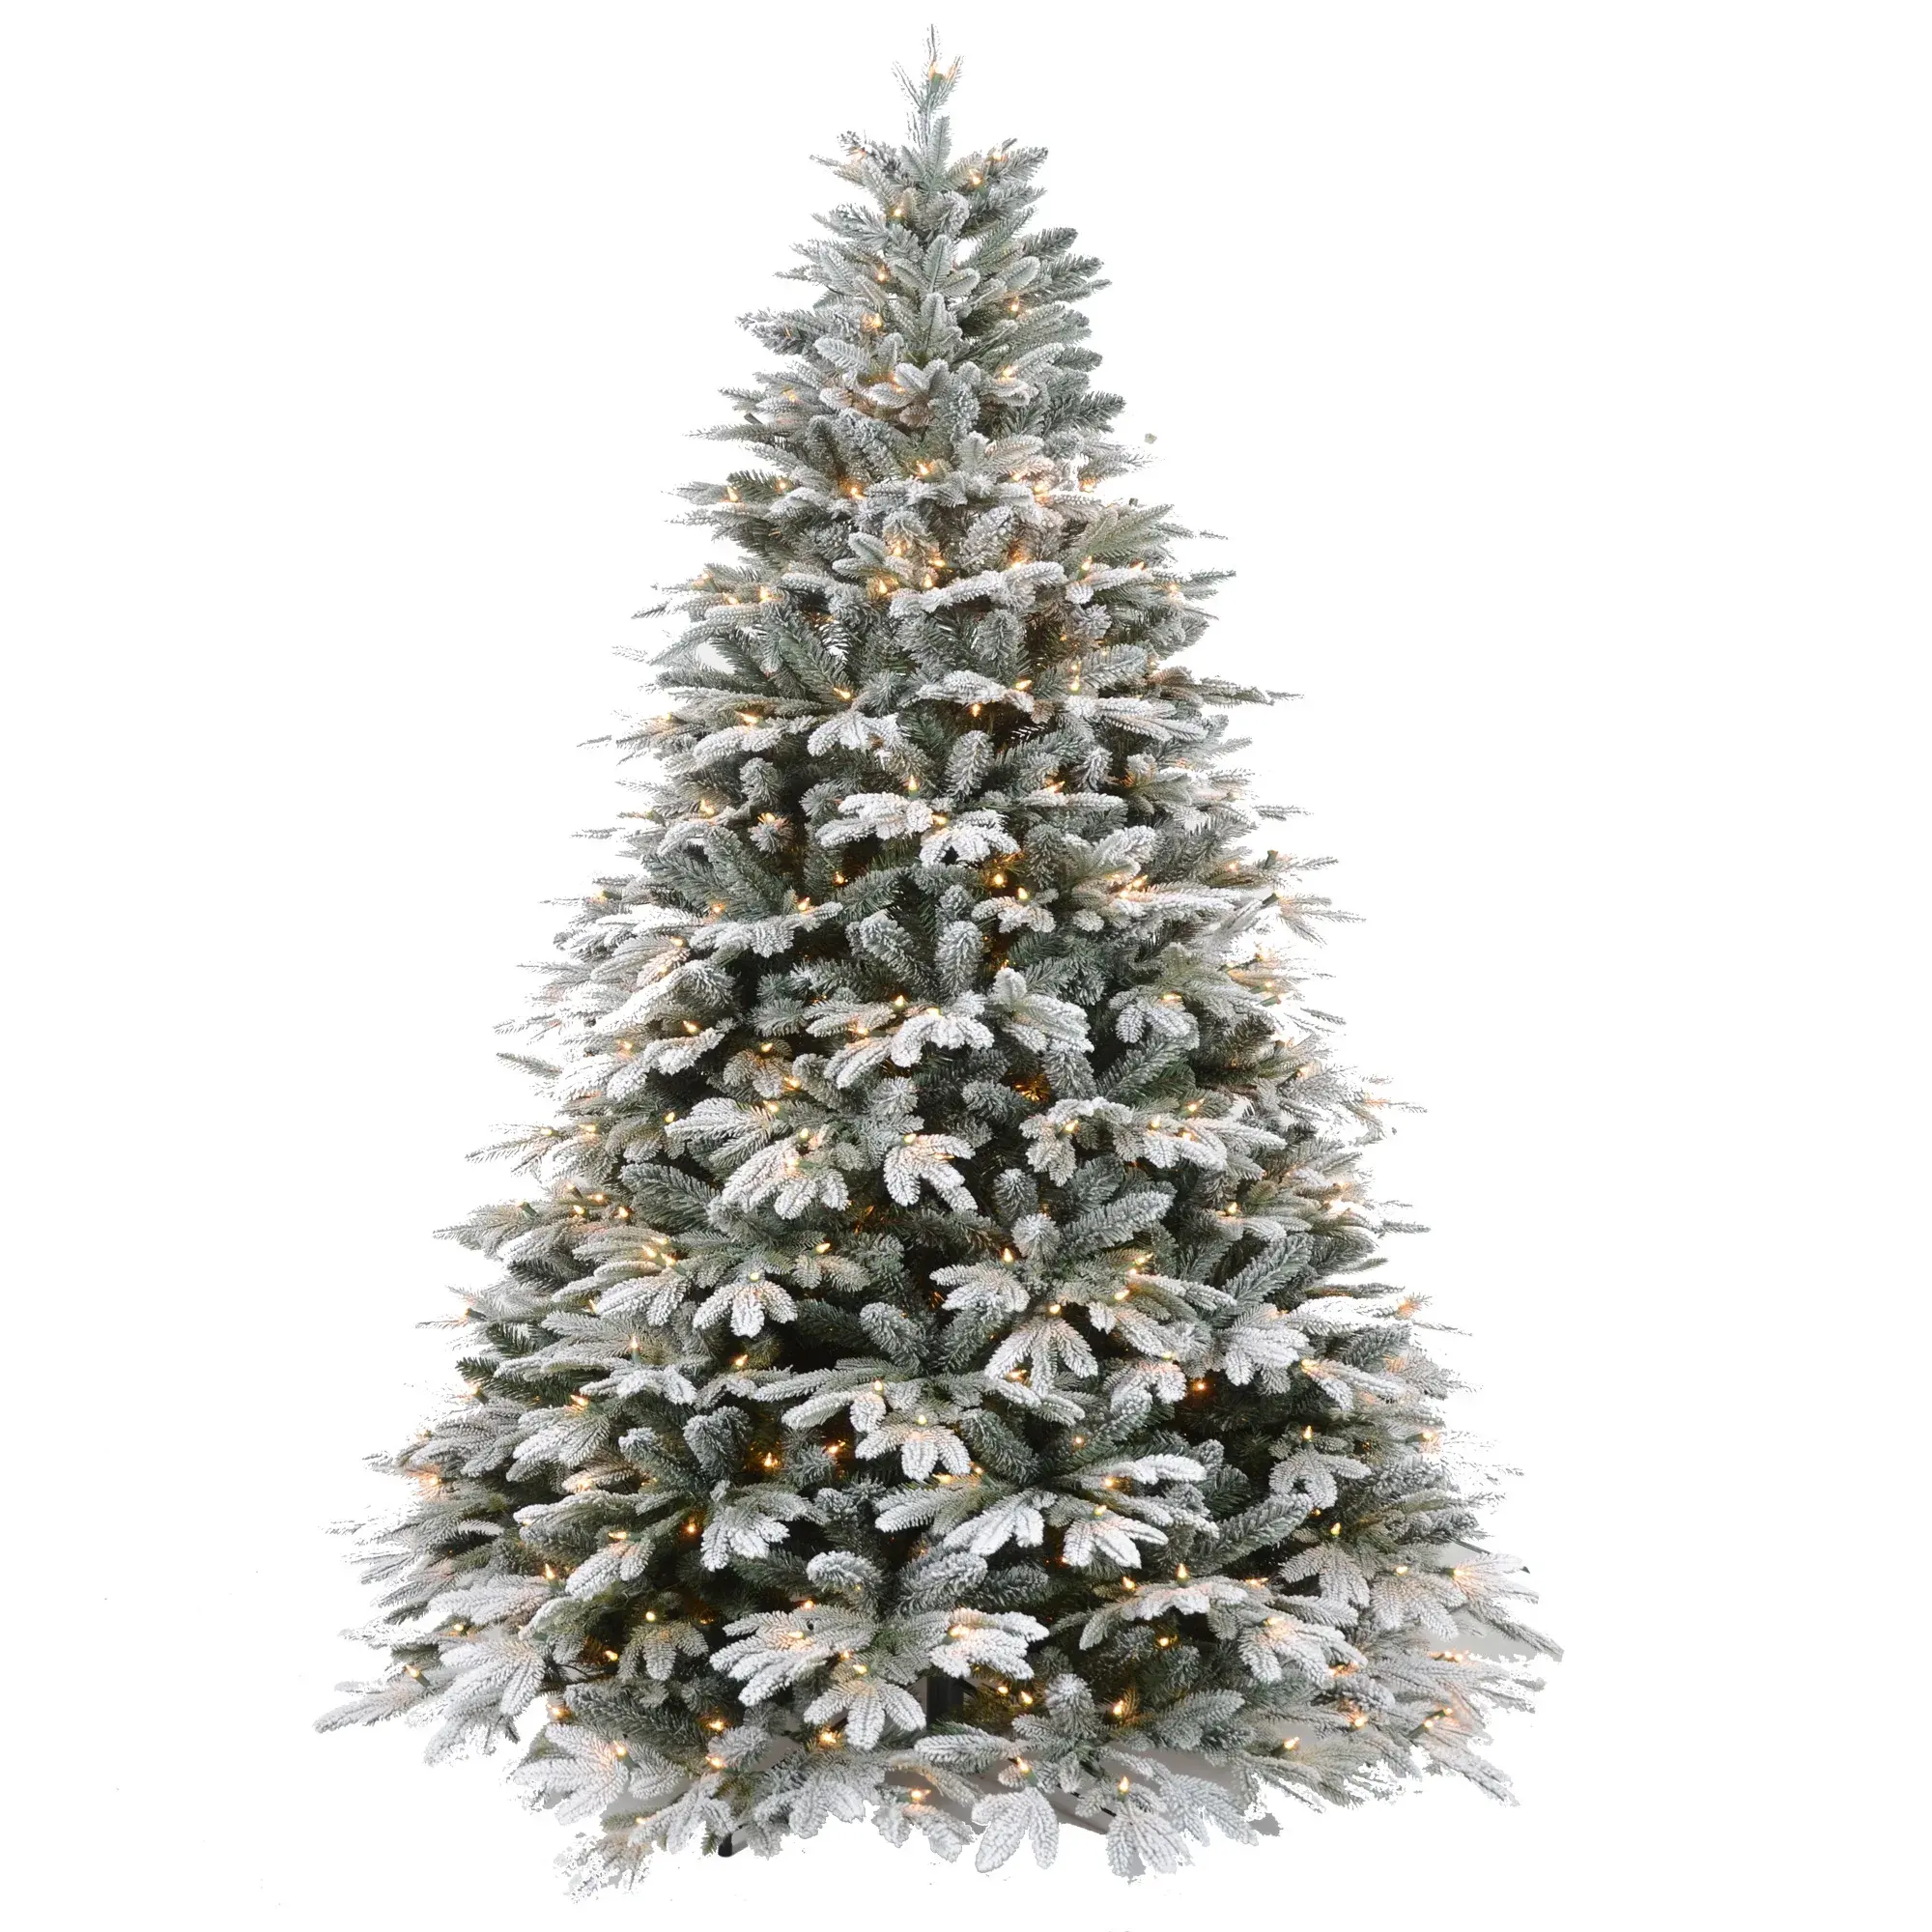 Горячая распродажа, плотная Снежная Рождественская елка 7,5 футов, искусственная белая новогодняя елка из ПВХ, распродажа